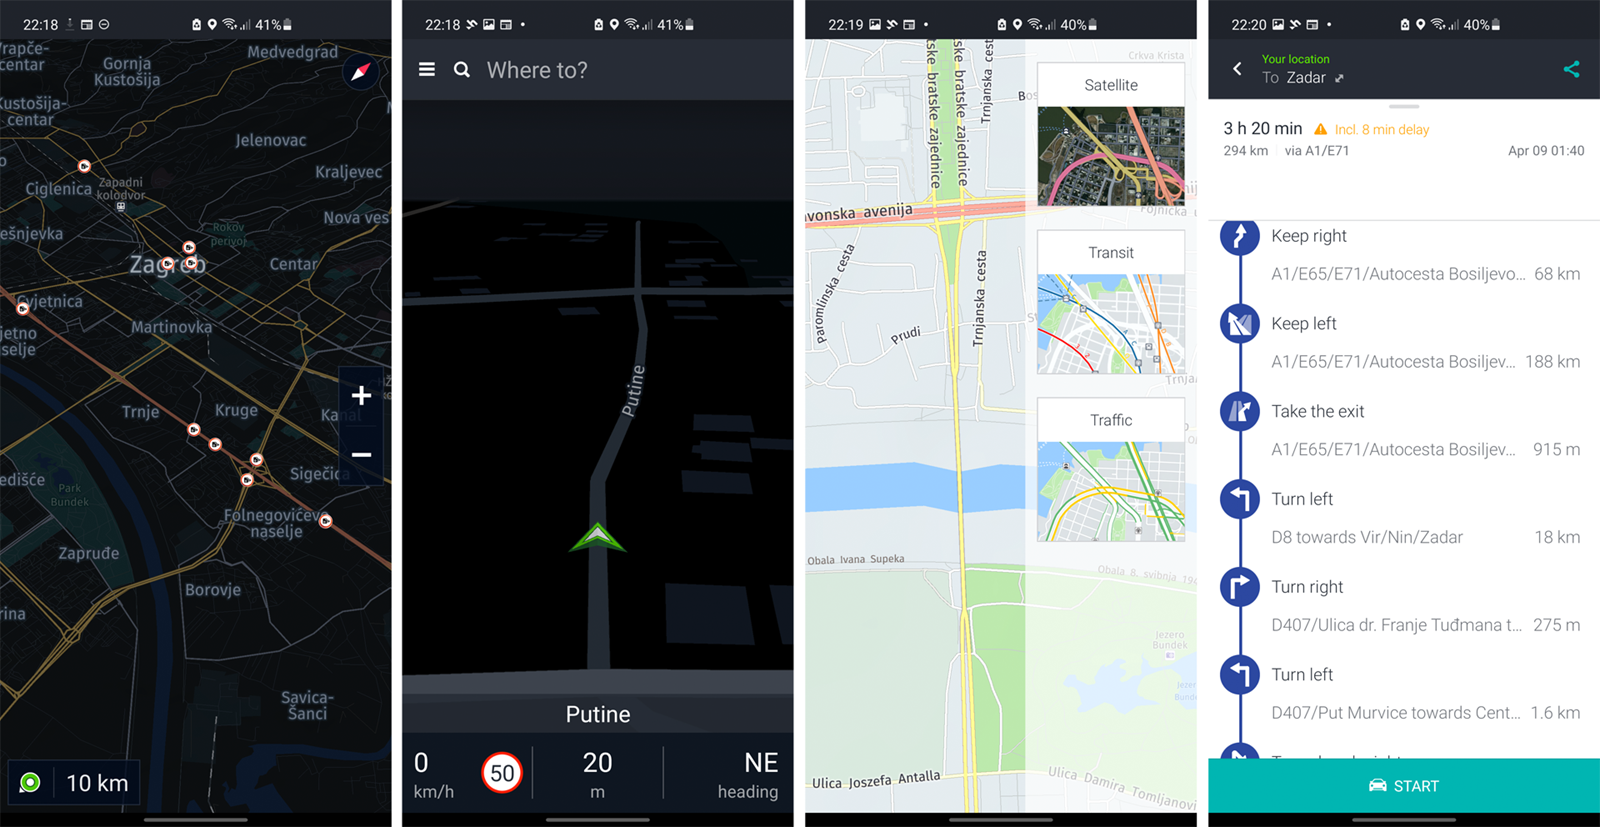 HERE WeGo - poznata aplikacija za navigaciju i onda kad nema internetske  veze - App dana @ Bug.hr